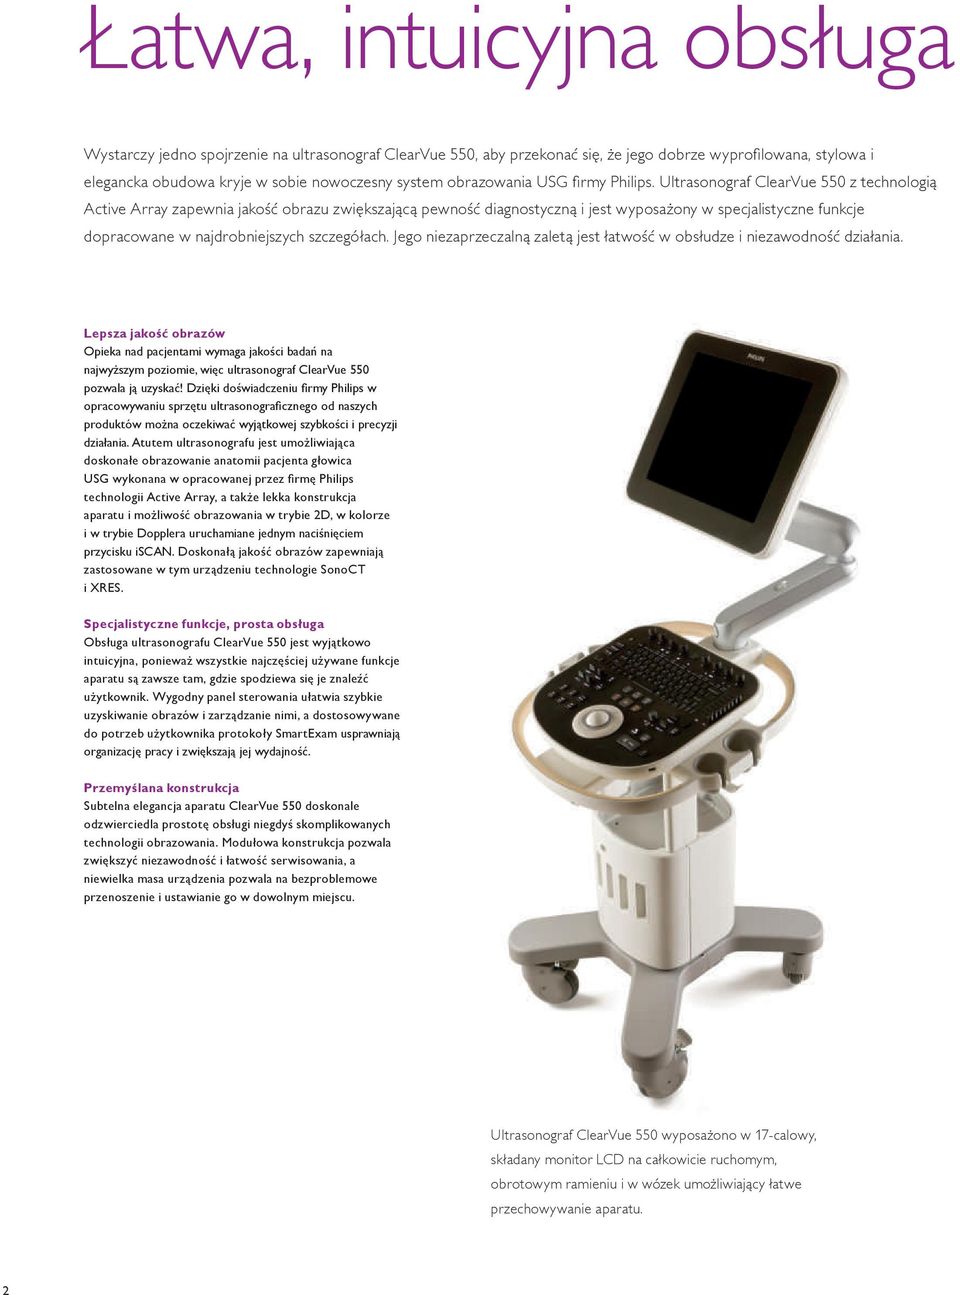 Ultrasonograf ClearVue 550 z technologią Active Array zapewnia jakość obrazu zwiększającą pewność diagnostyczną i jest wyposażony w specjalistyczne funkcje dopracowane w najdrobniejszych szczegółach.